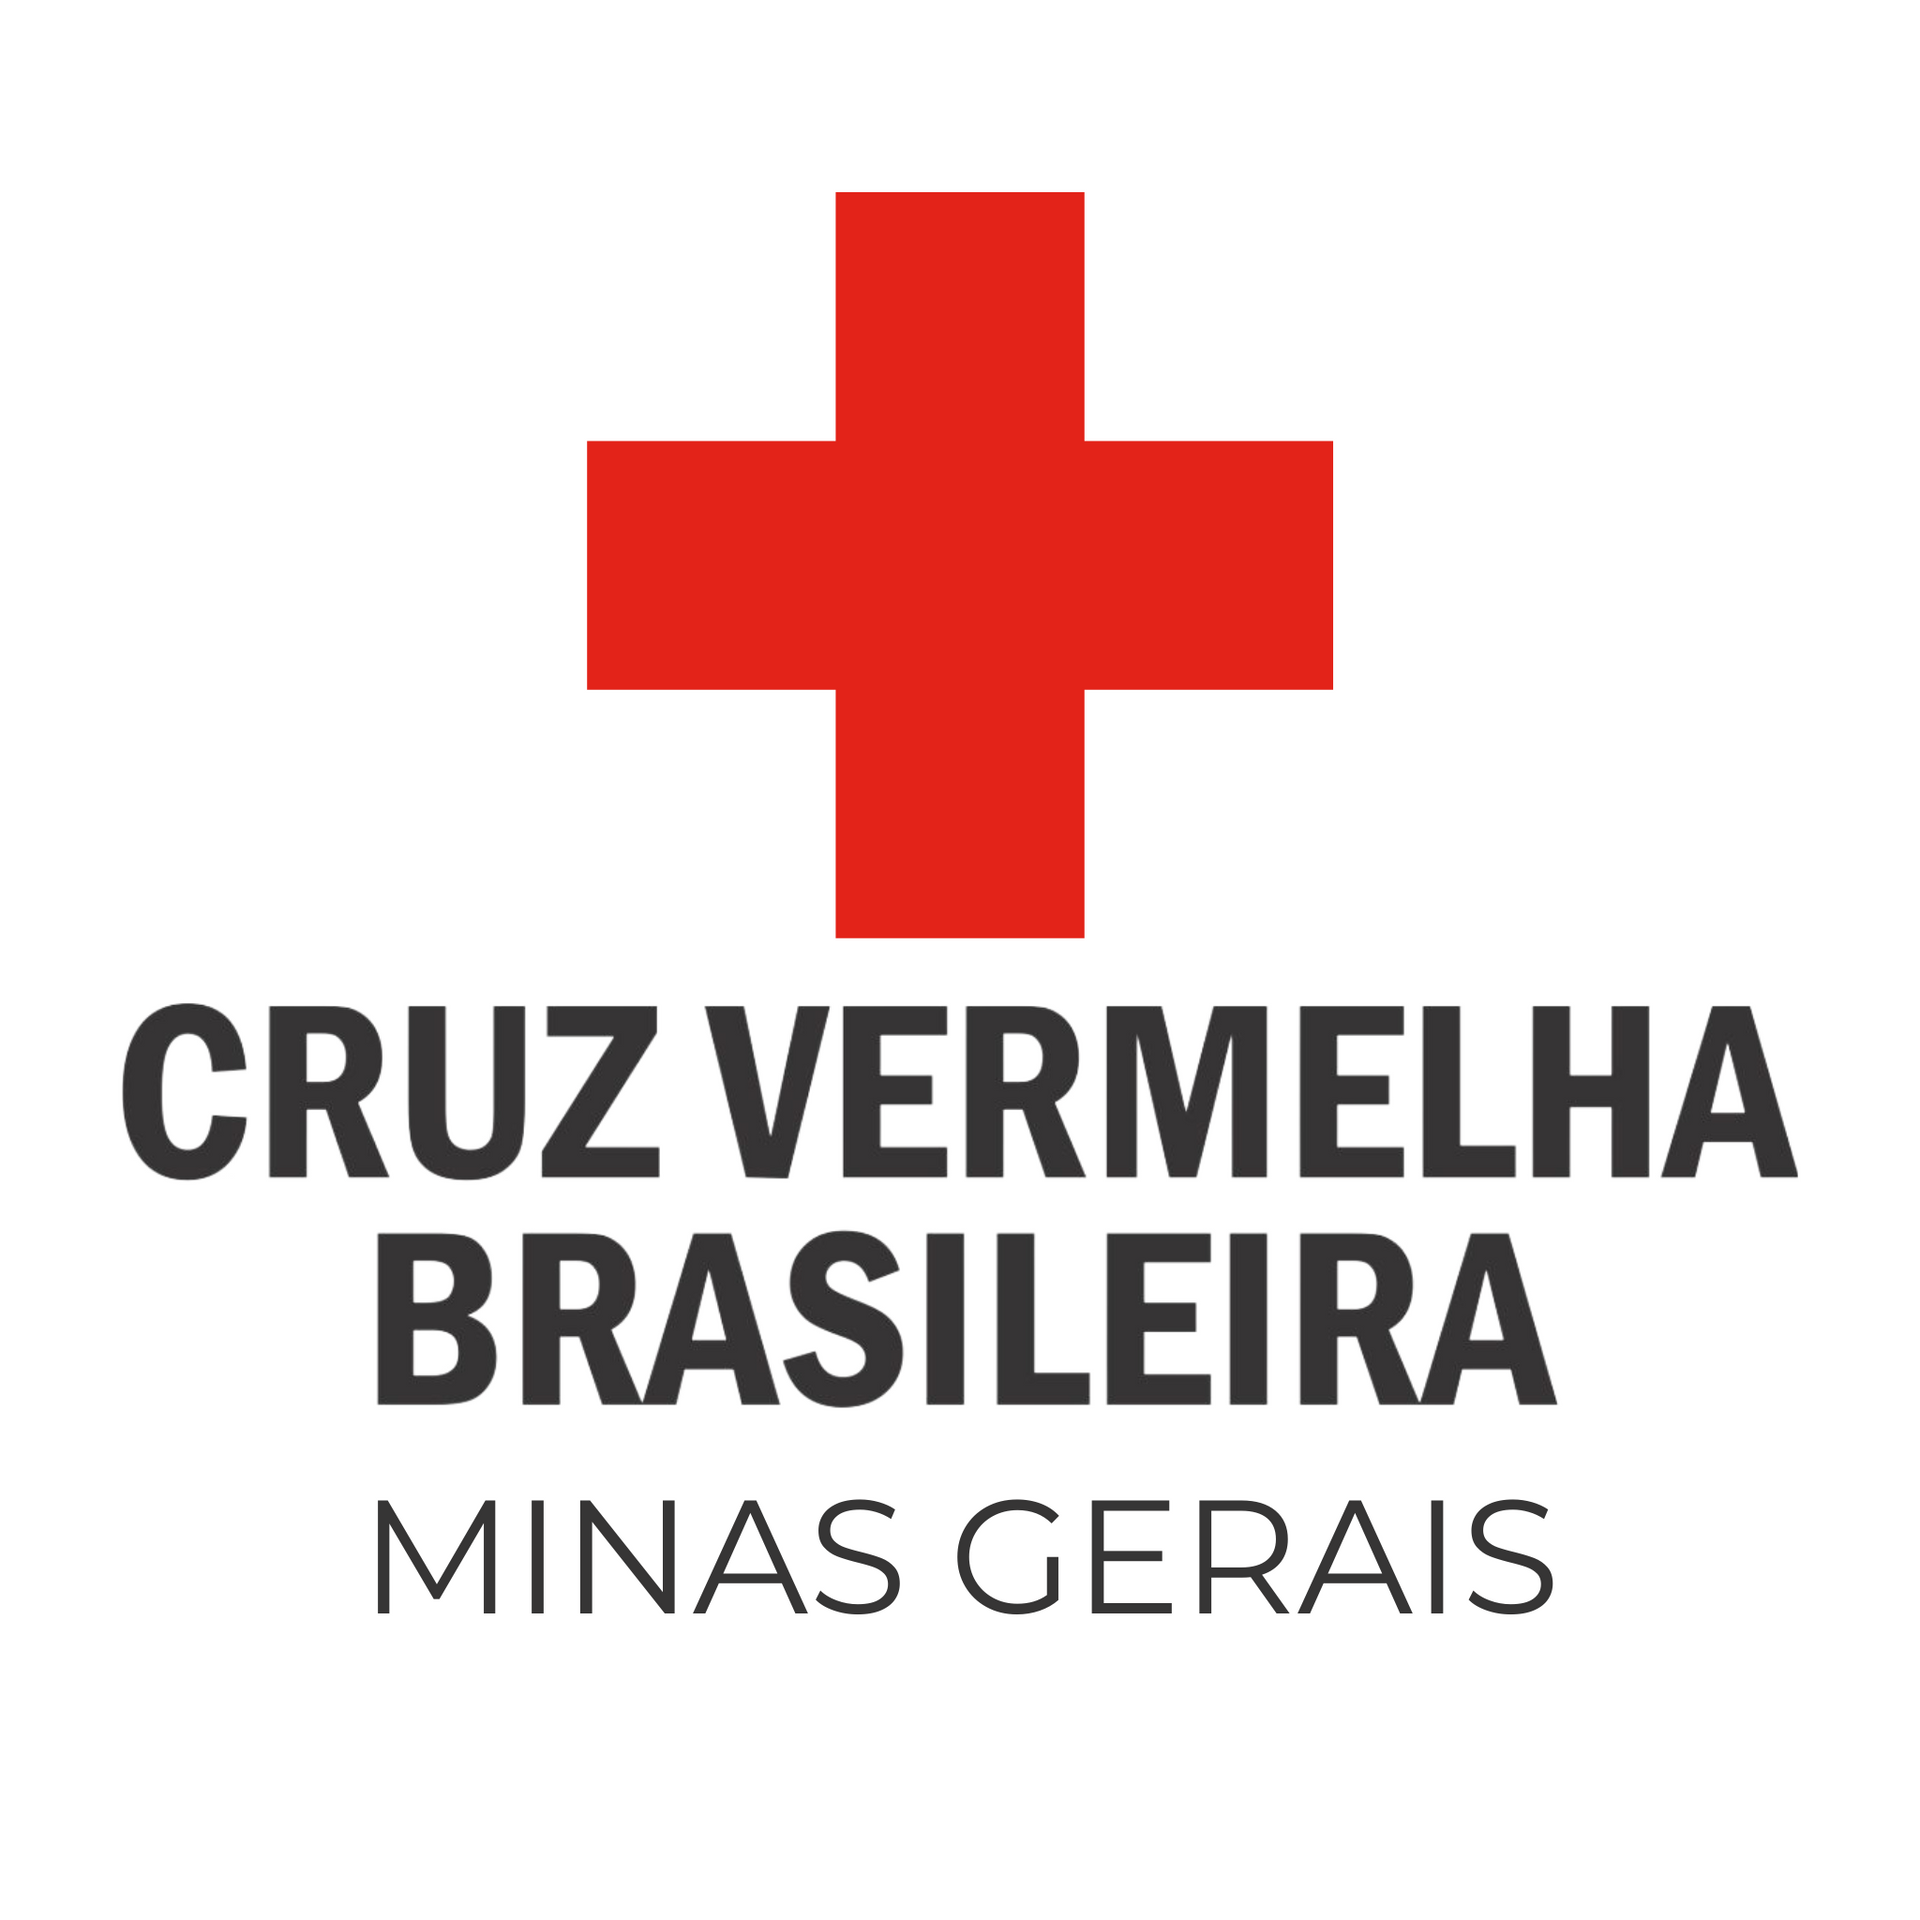 The logo for cruz vermelha brasileira minas gerais is a red cross on a white background.